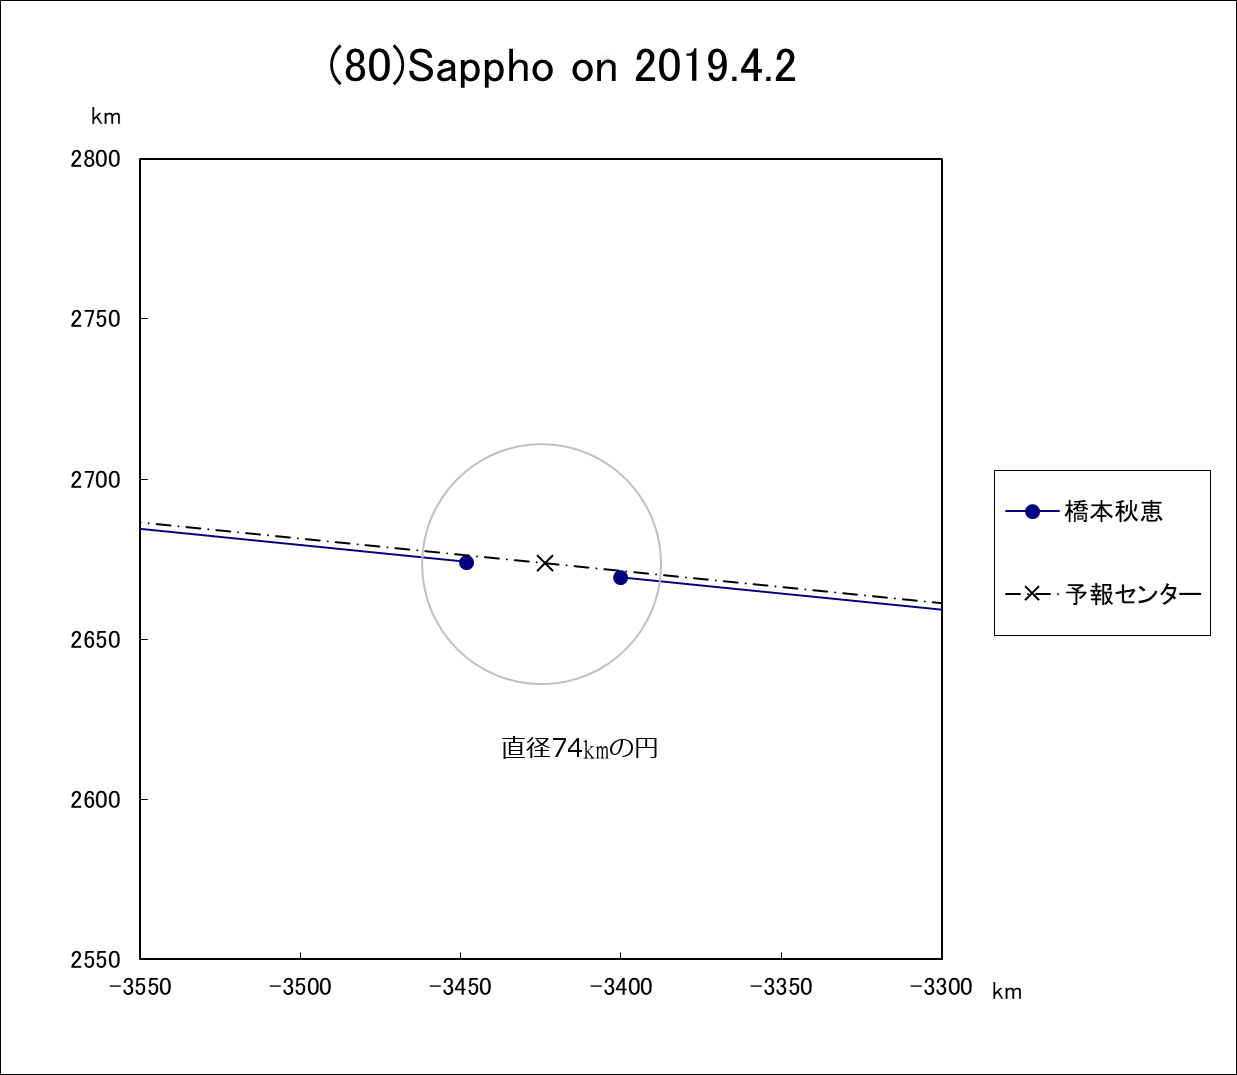 小惑星(80)Sappho による掩蔽